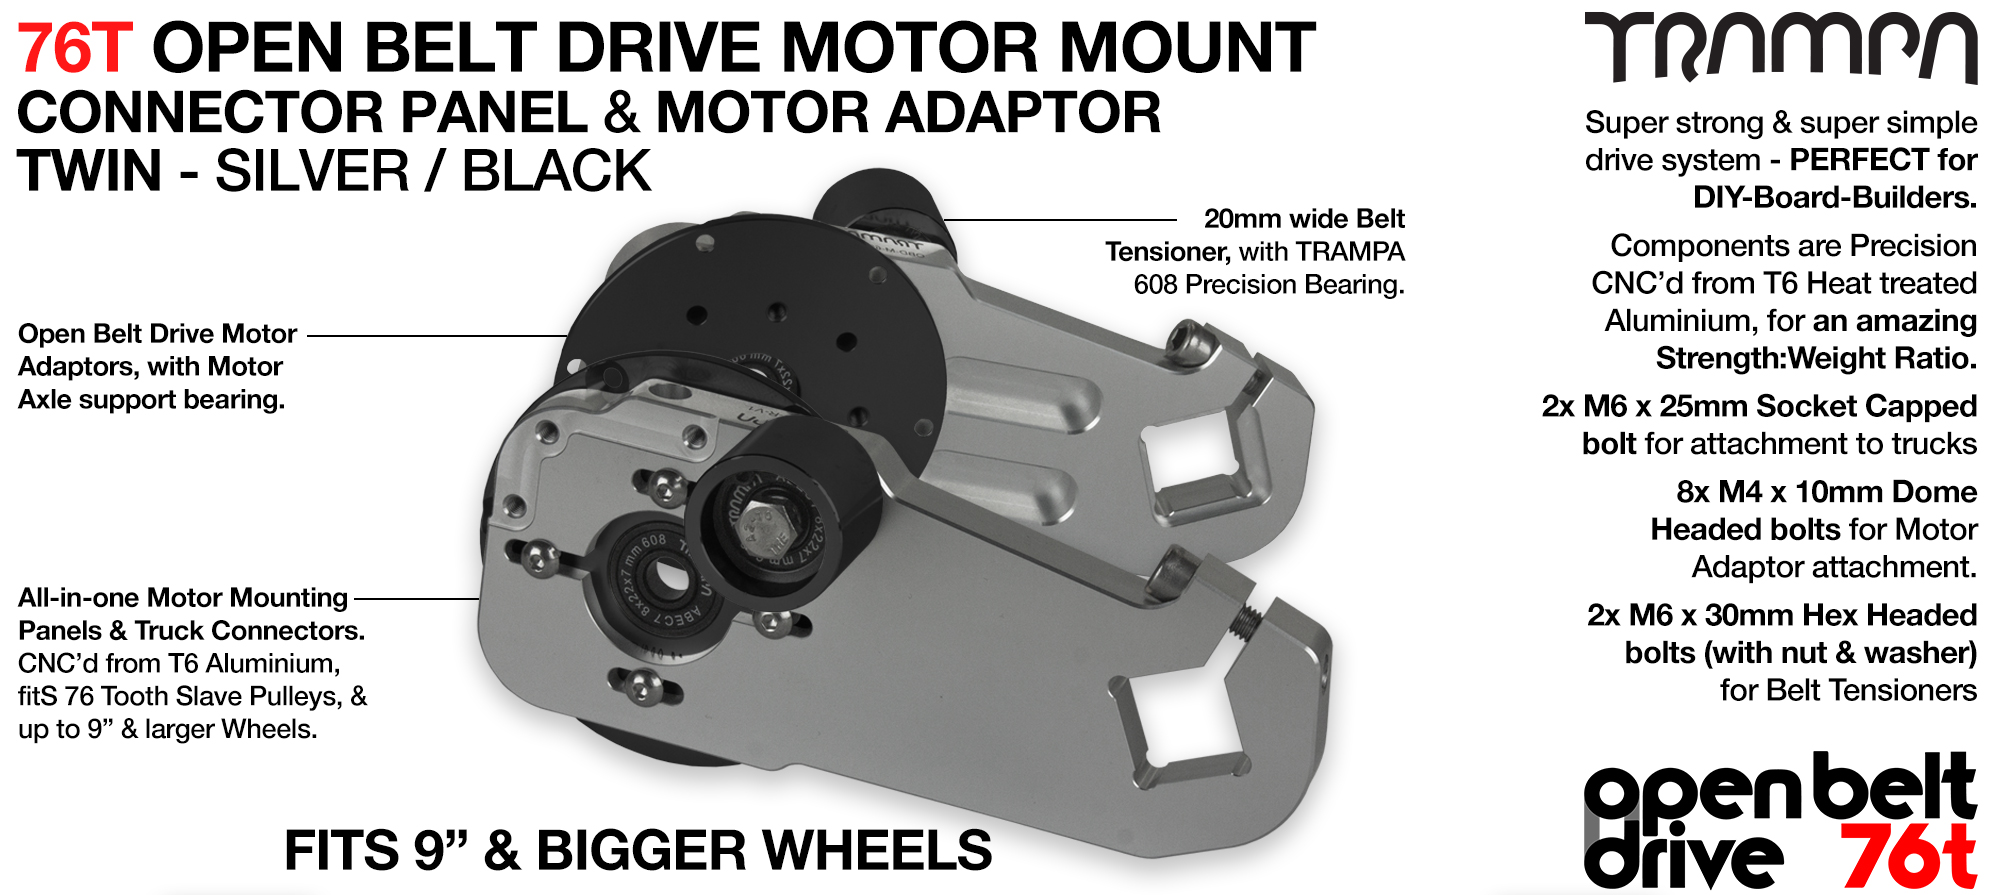 76T Open Belt Drive Motor Mount & Motor Adaptor - TWIN SILVER